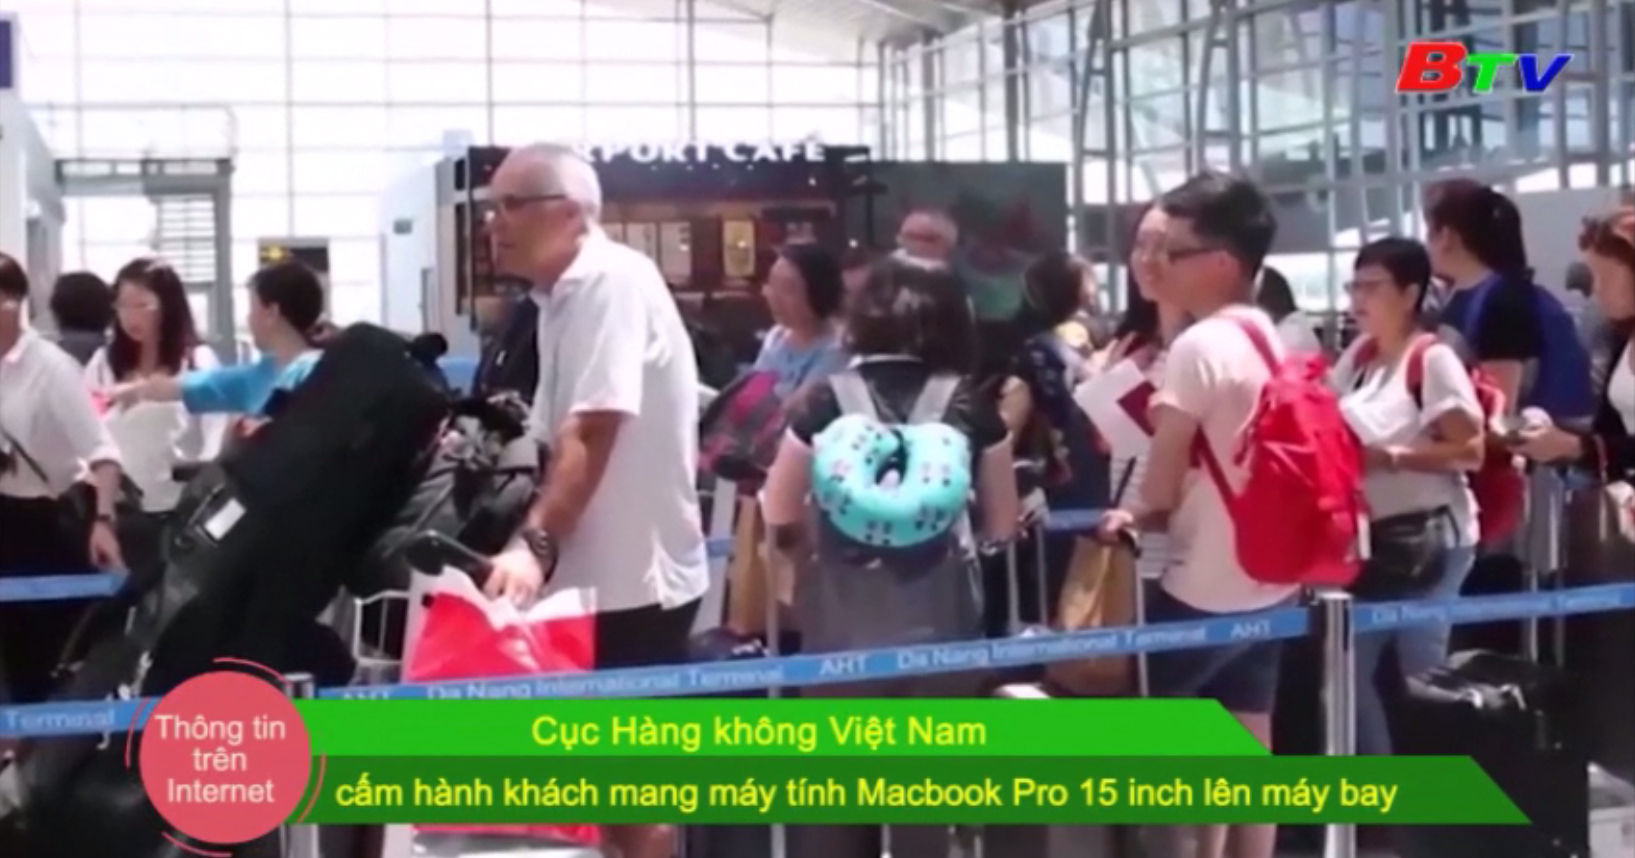 Cục Hàng không Việt Nam cấm hành khách mang máy tính Macbook Pro 15 inch lên máy bay